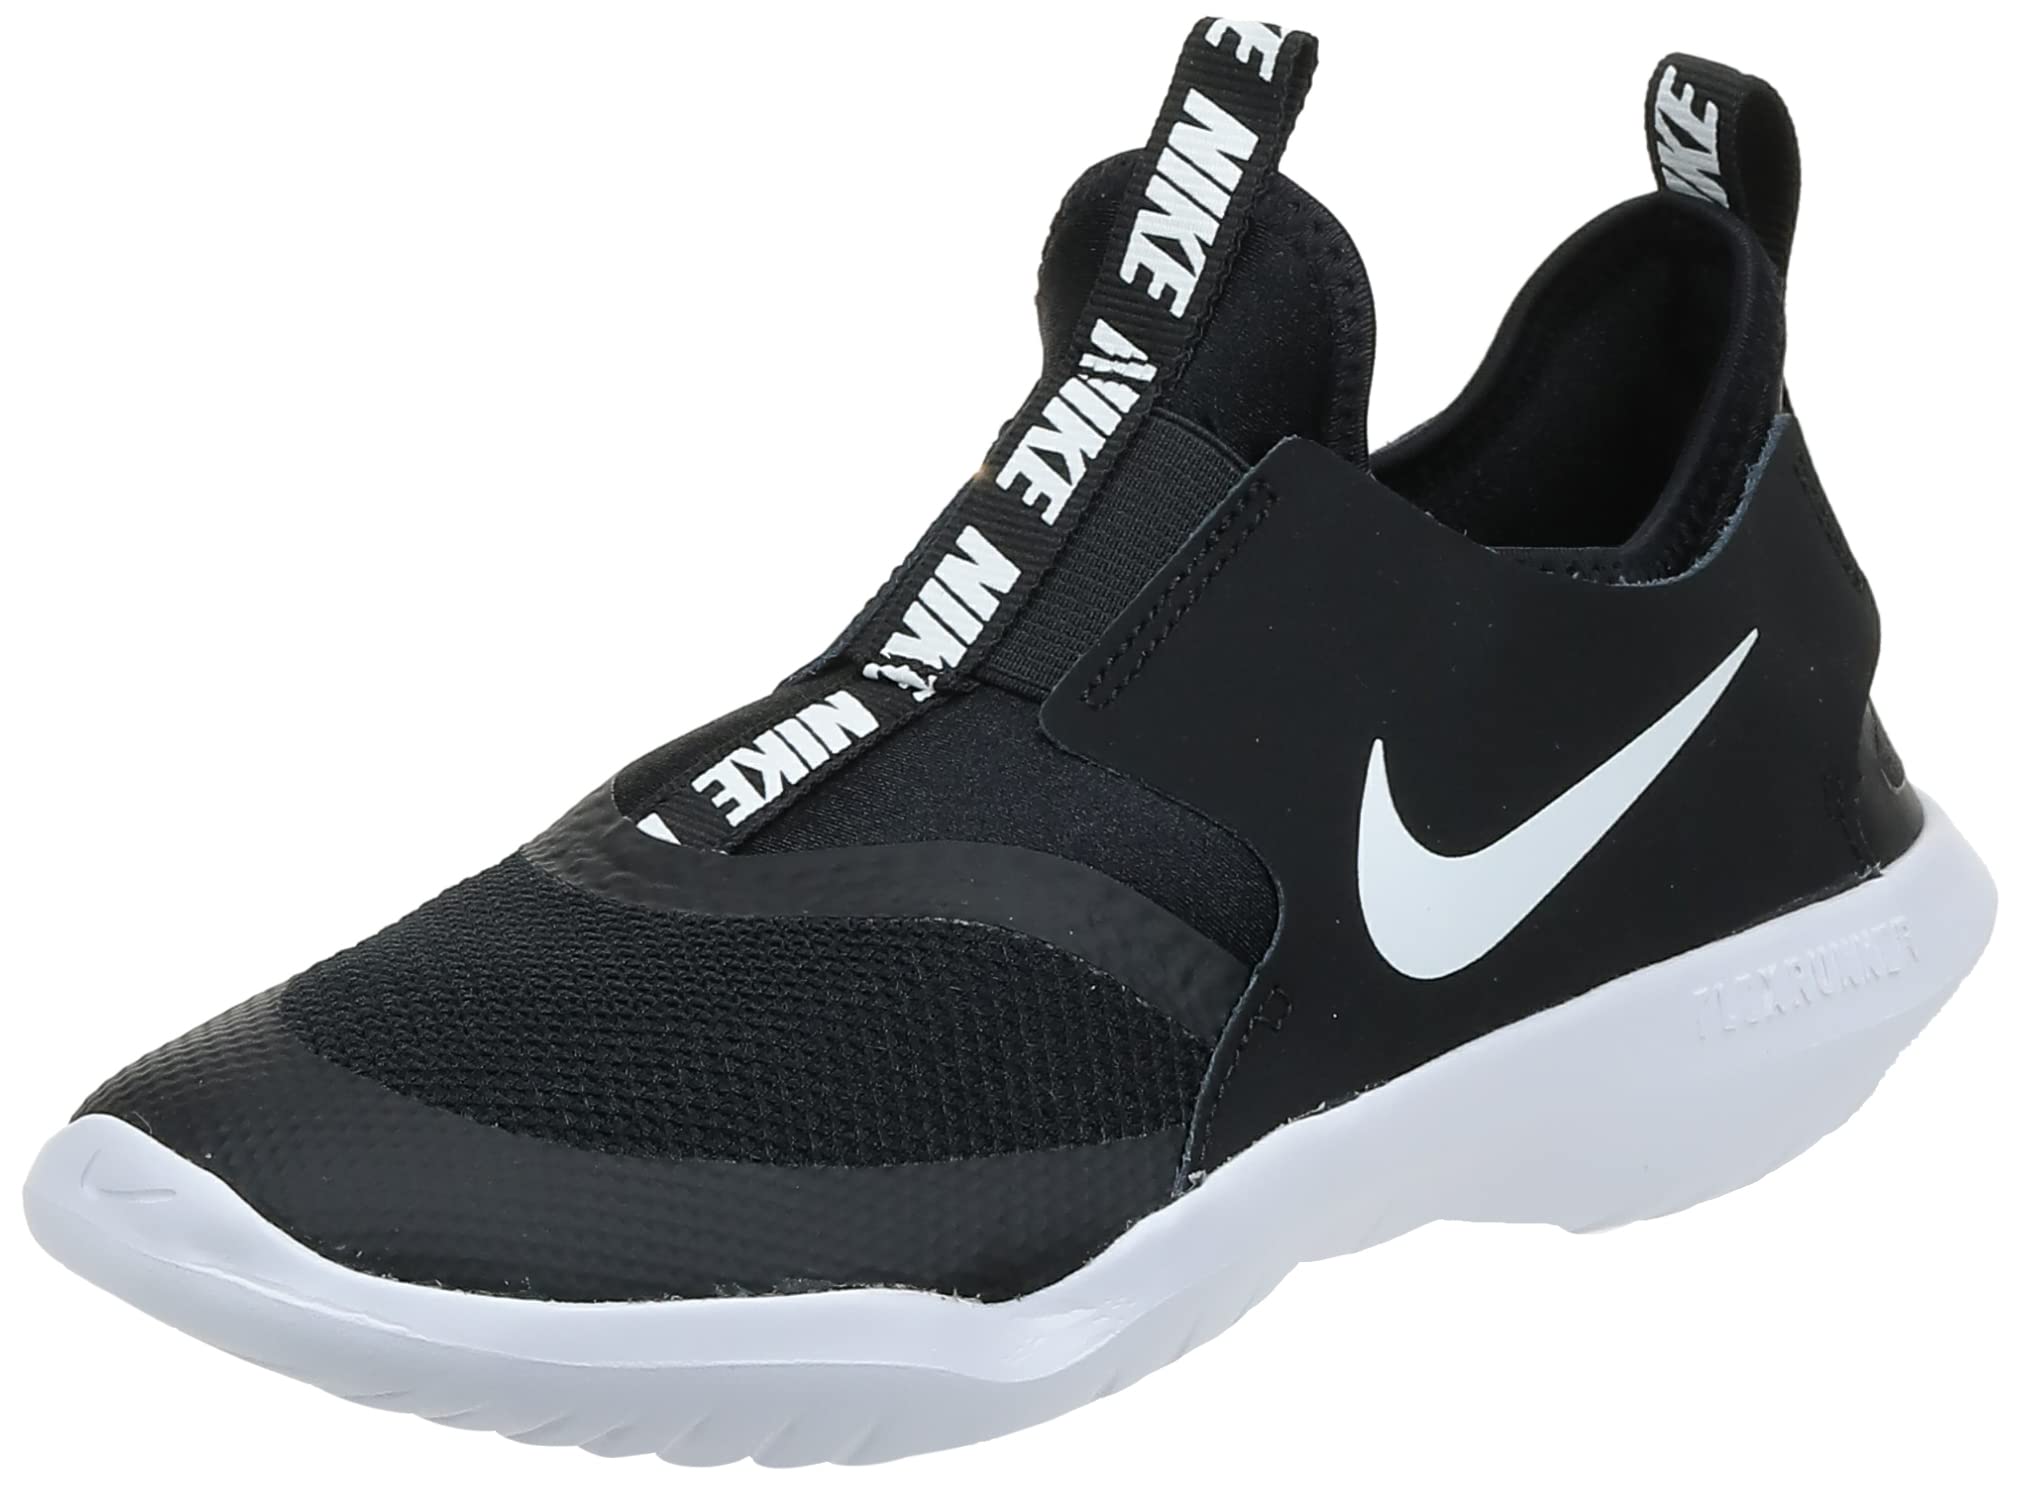 Nike Flex Runner (Infant/Toddler) Black/White 9 Toddler M